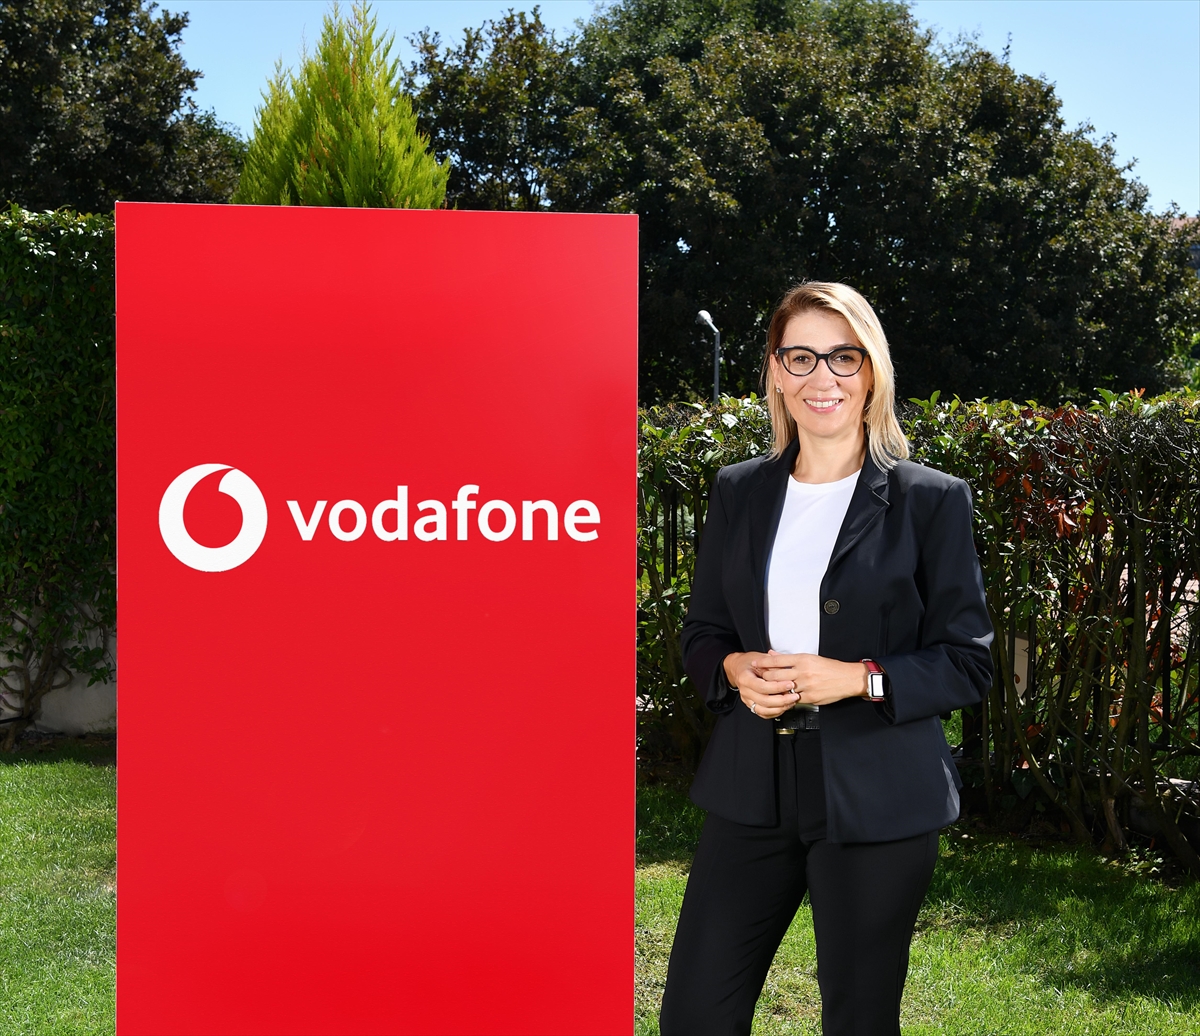 Vodafone, Türkiye’de metaversede mağaza açan ilk telekom markası oldu